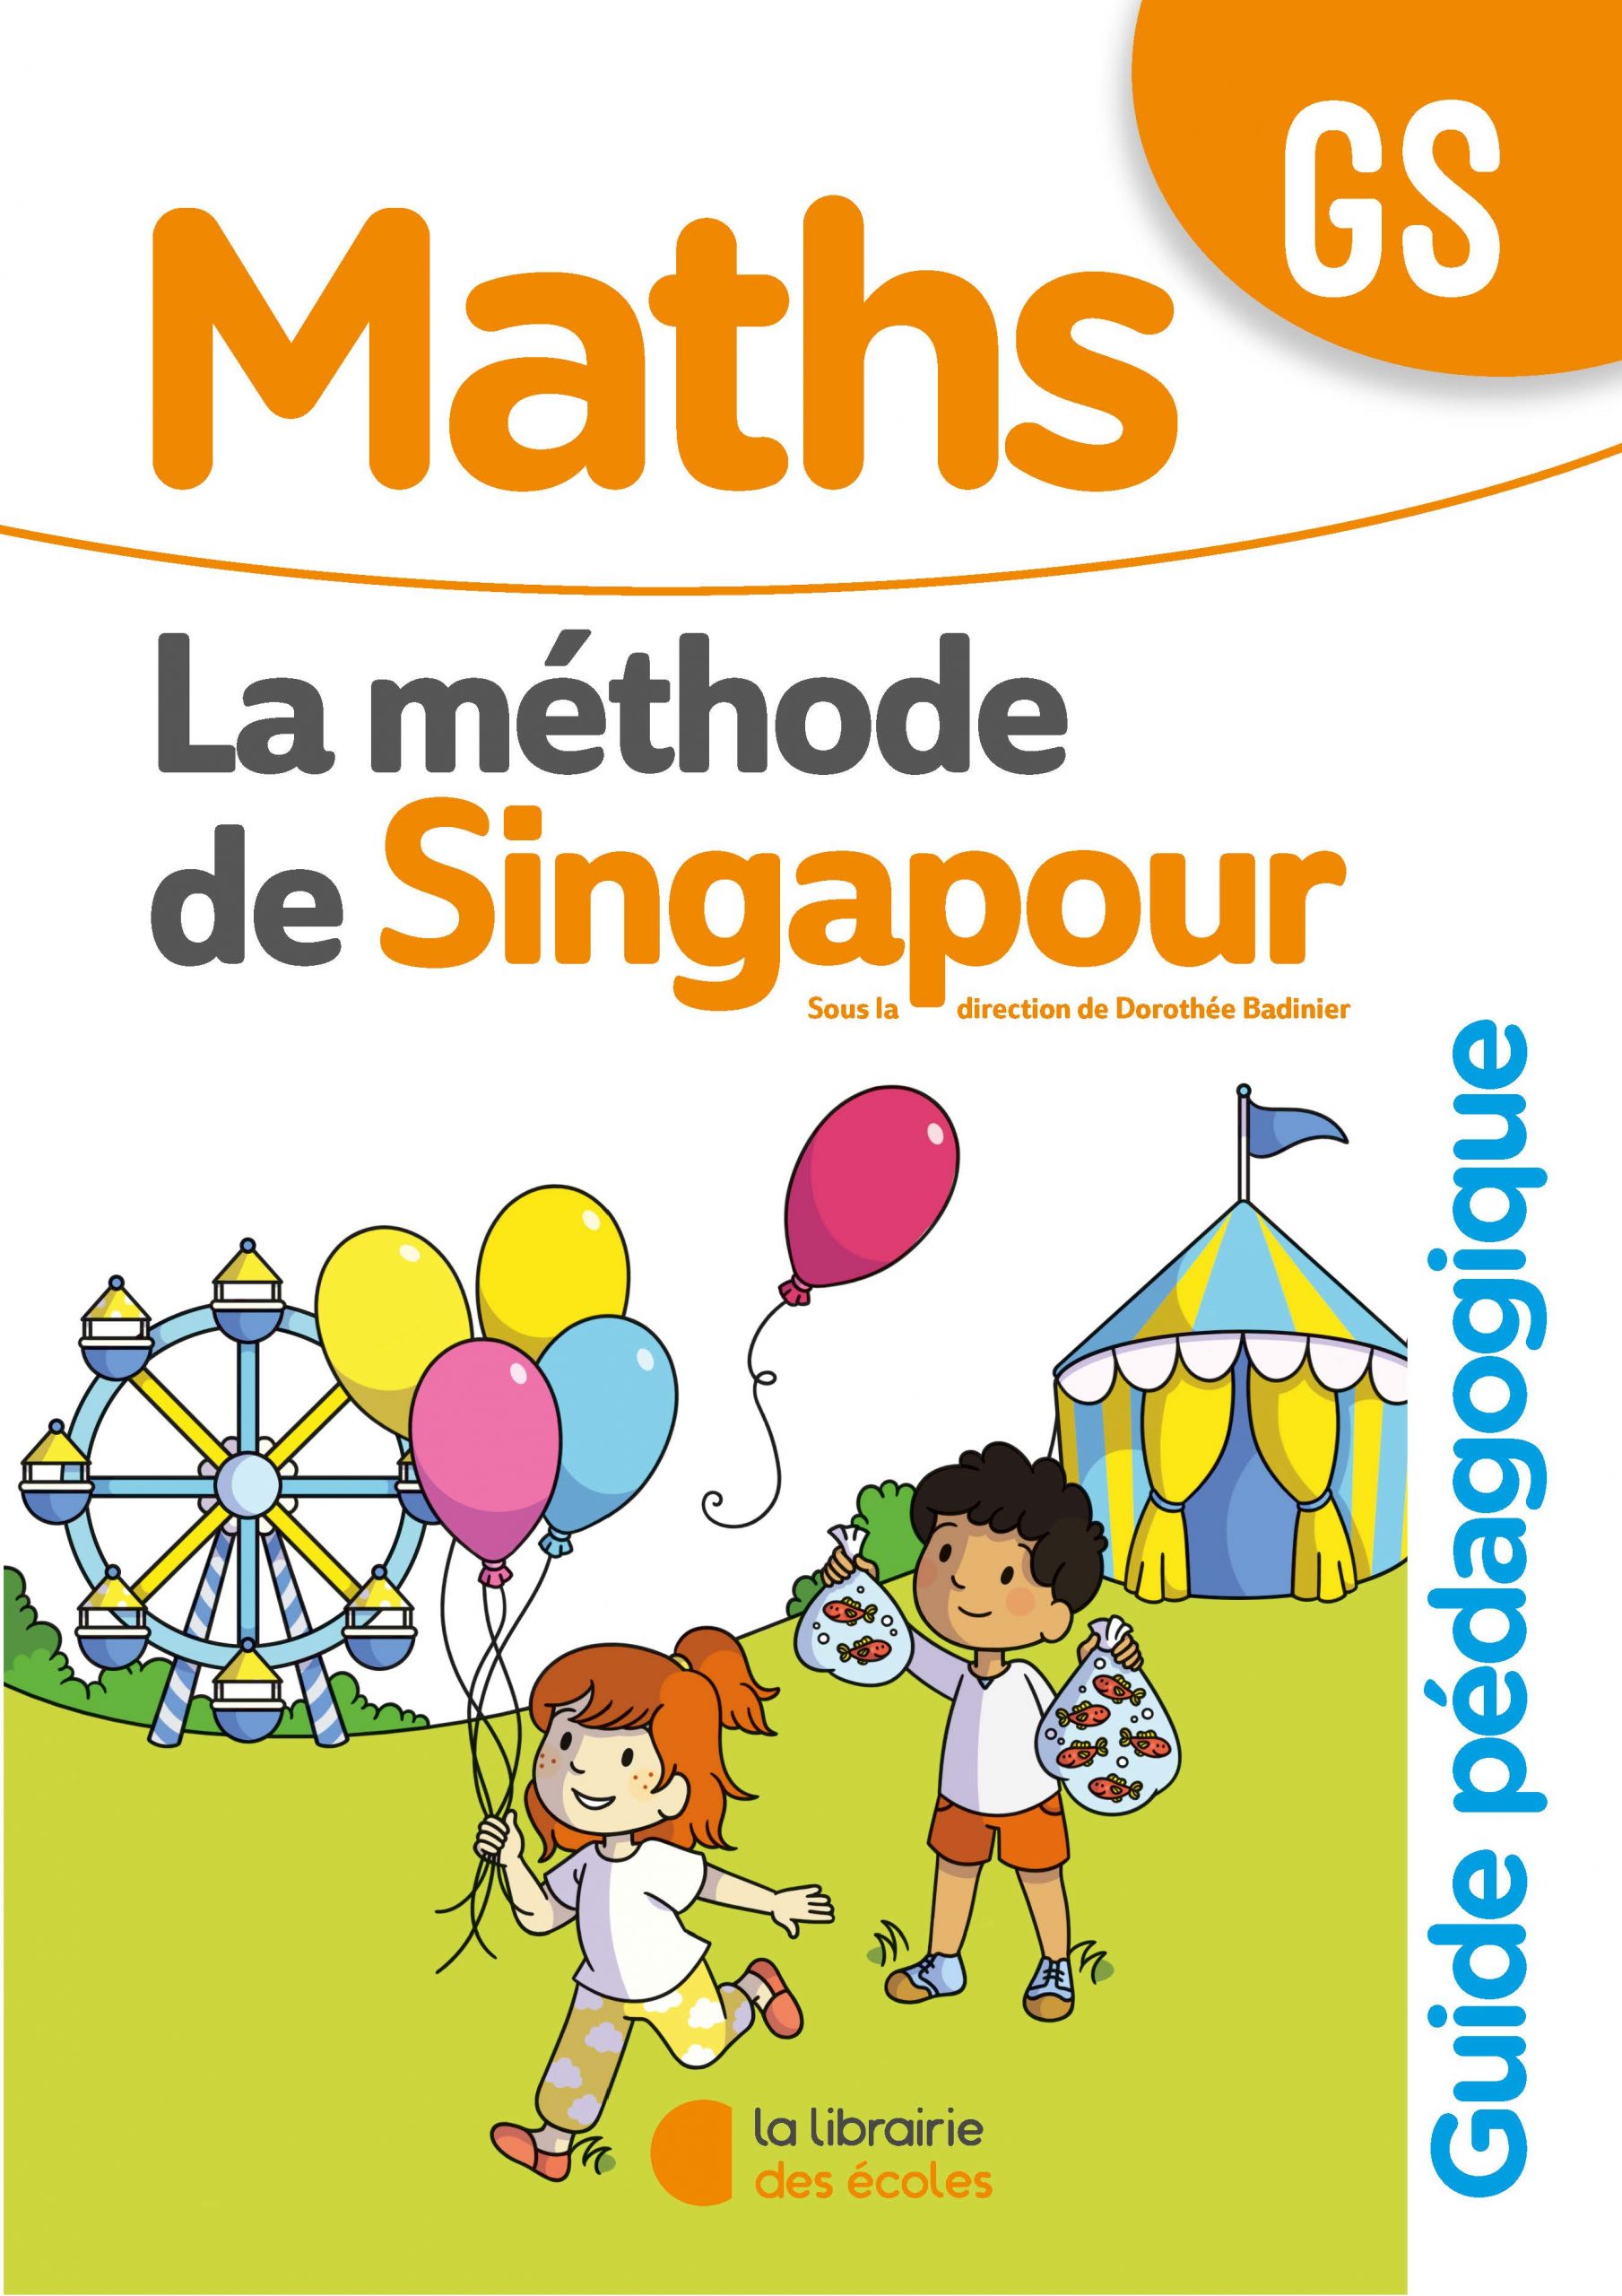 Maths CE1 - La méthode de Singapour - Guide pédagogique - HOPTOYS